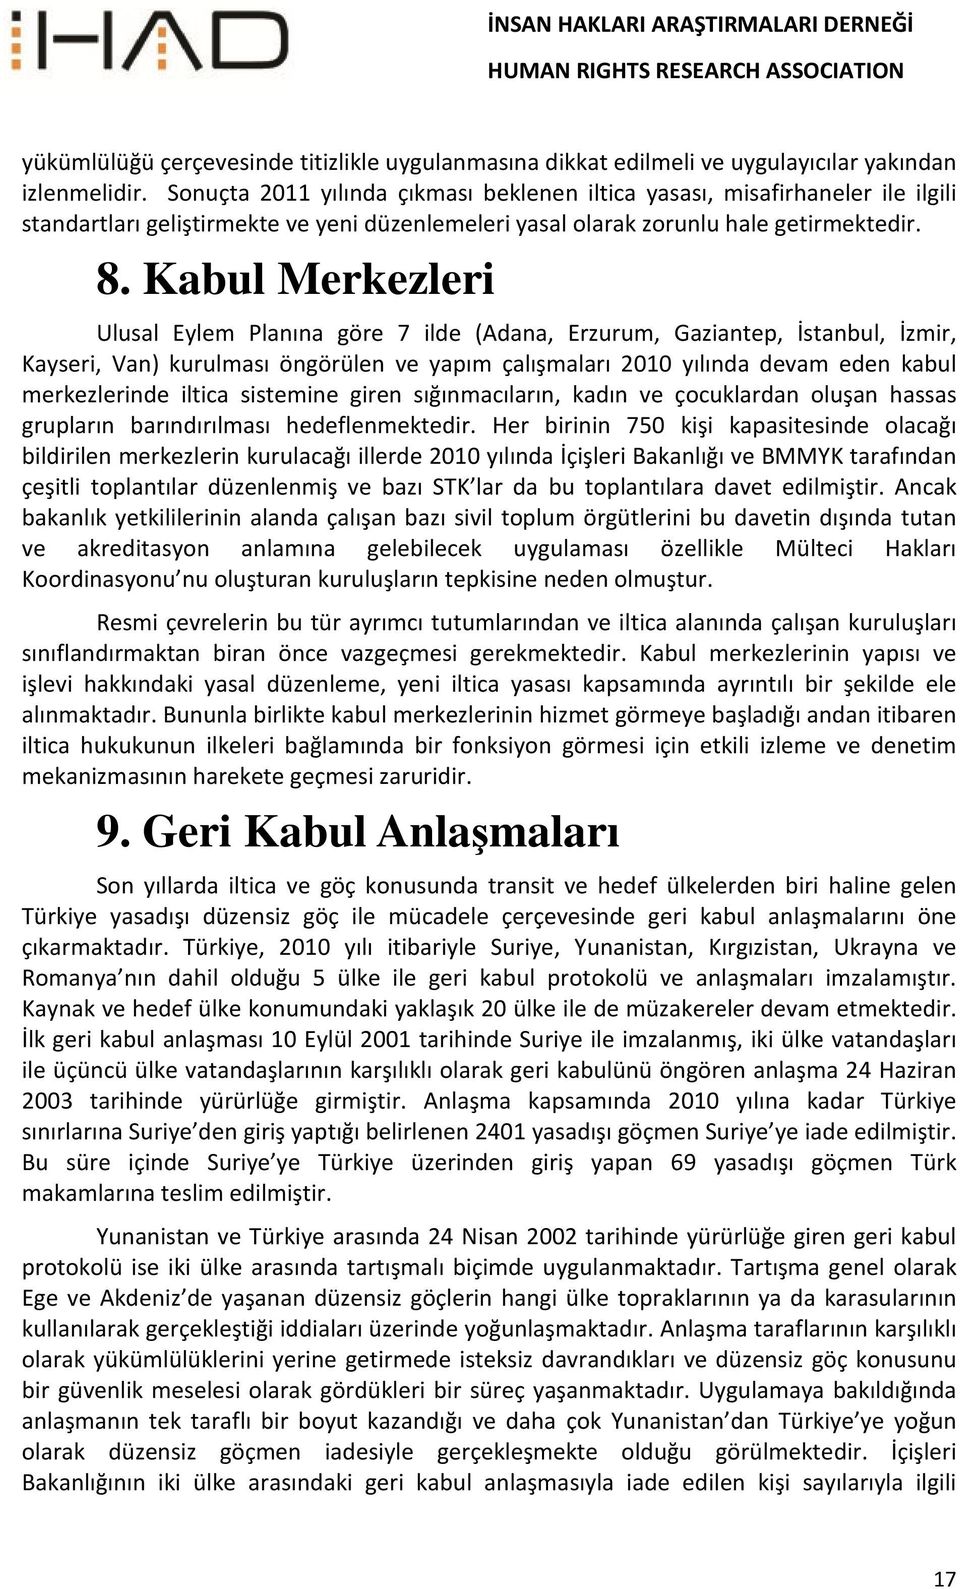 Kabul Merkezleri Ulusal Eylem Planına göre 7 ilde (Adana, Erzurum, Gaziantep, İstanbul, İzmir, Kayseri, Van) kurulması öngörülen ve yapım çalışmaları 2010 yılında devam eden kabul merkezlerinde